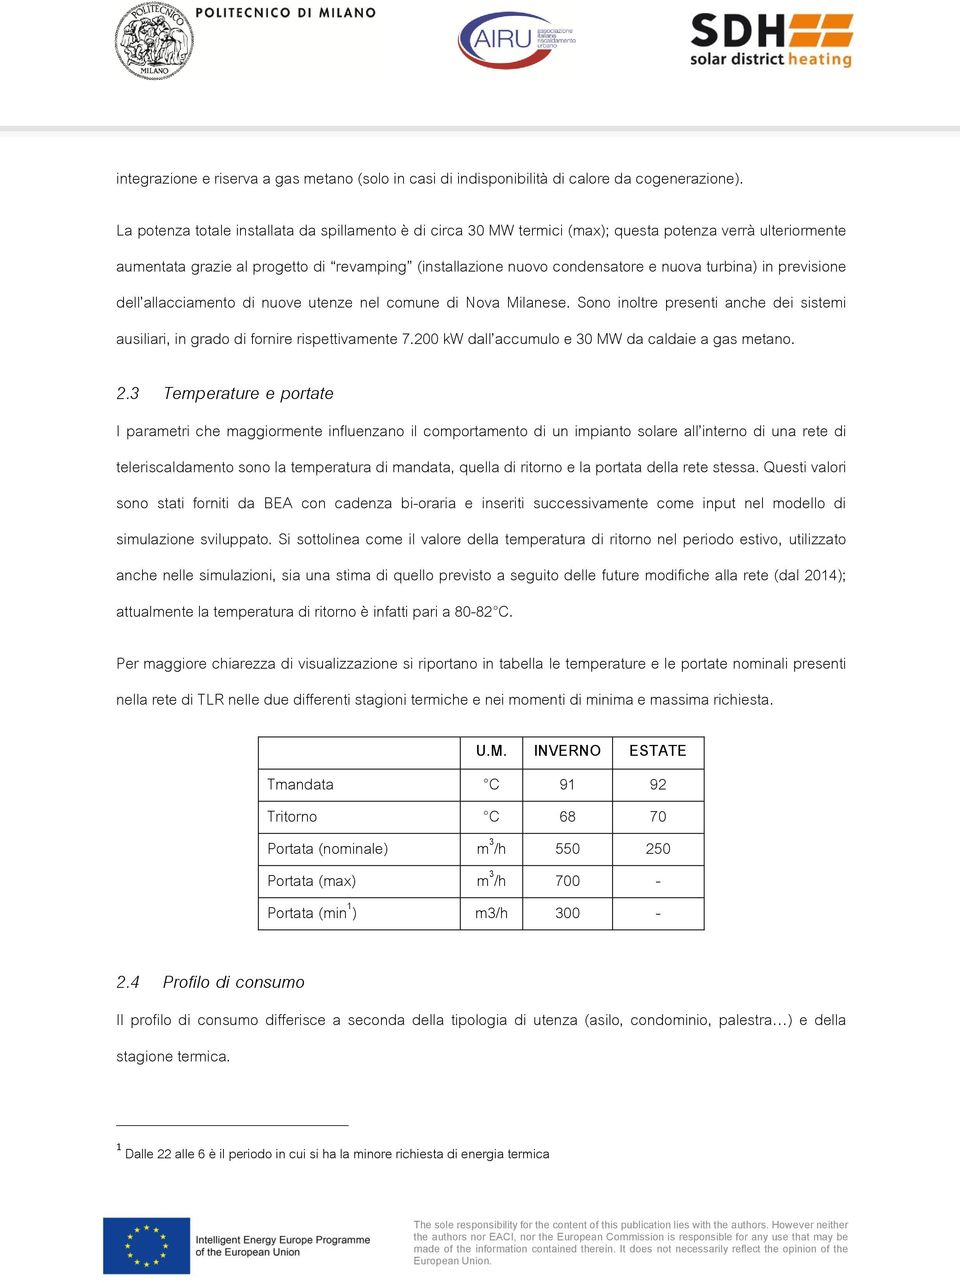 turbina) in previsione dell allacciamento di nuove utenze nel comune di Nova Milanese. Sono inoltre presenti anche dei sistemi ausiliari, in grado di fornire rispettivamente 7.